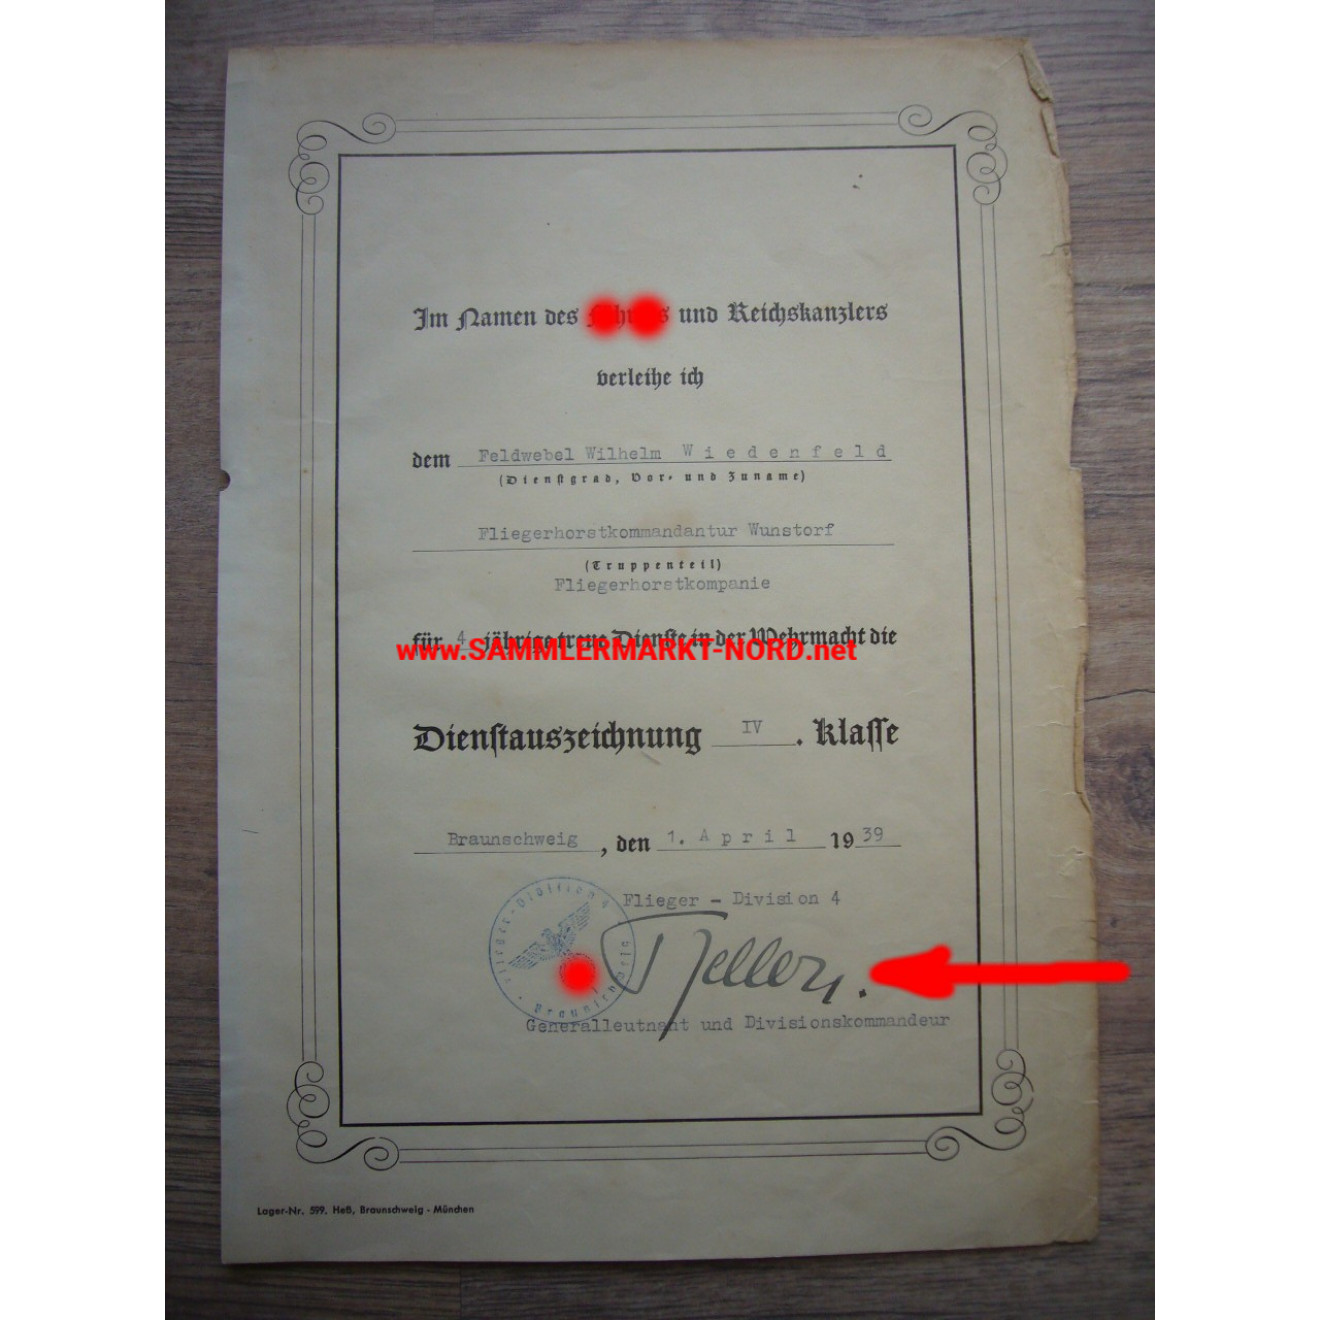 Luftwaffe - Urkunde Dienstauszeichnung 4. Klasse - Generalleutnant ALFRED KELLER - Autograph